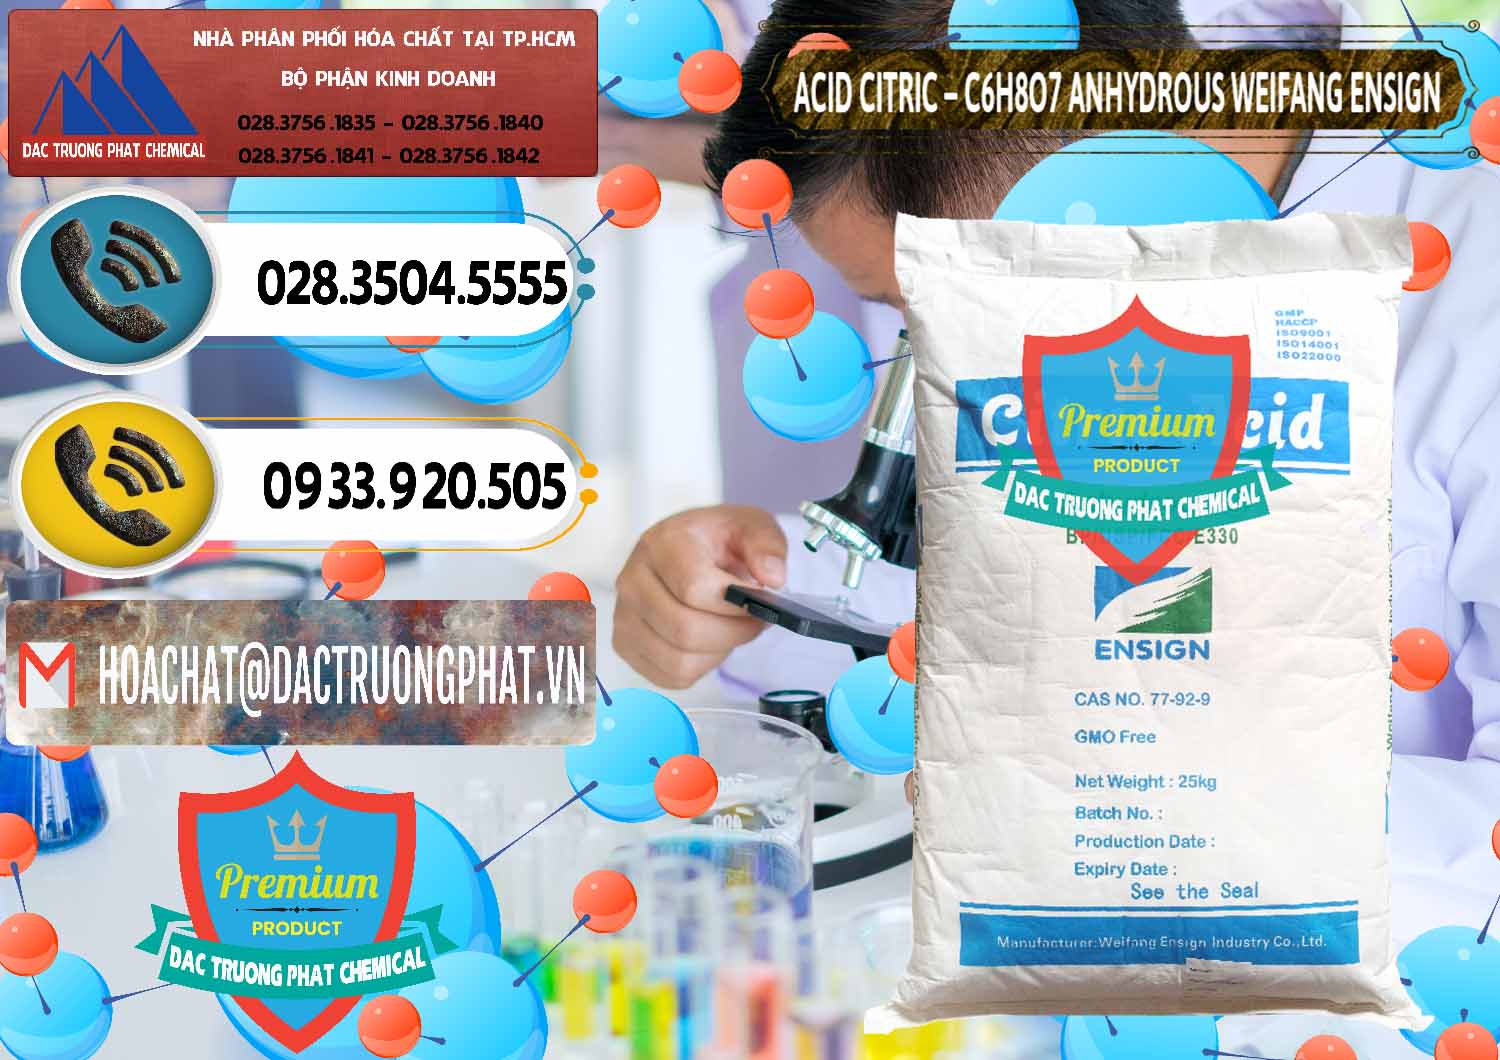 Chuyên cung cấp _ bán Acid Citric - Axit Citric Khan Anhydrous Weifang Trung Quốc China - 0008 - Nơi chuyên bán và phân phối hóa chất tại TP.HCM - hoachatdetnhuom.vn